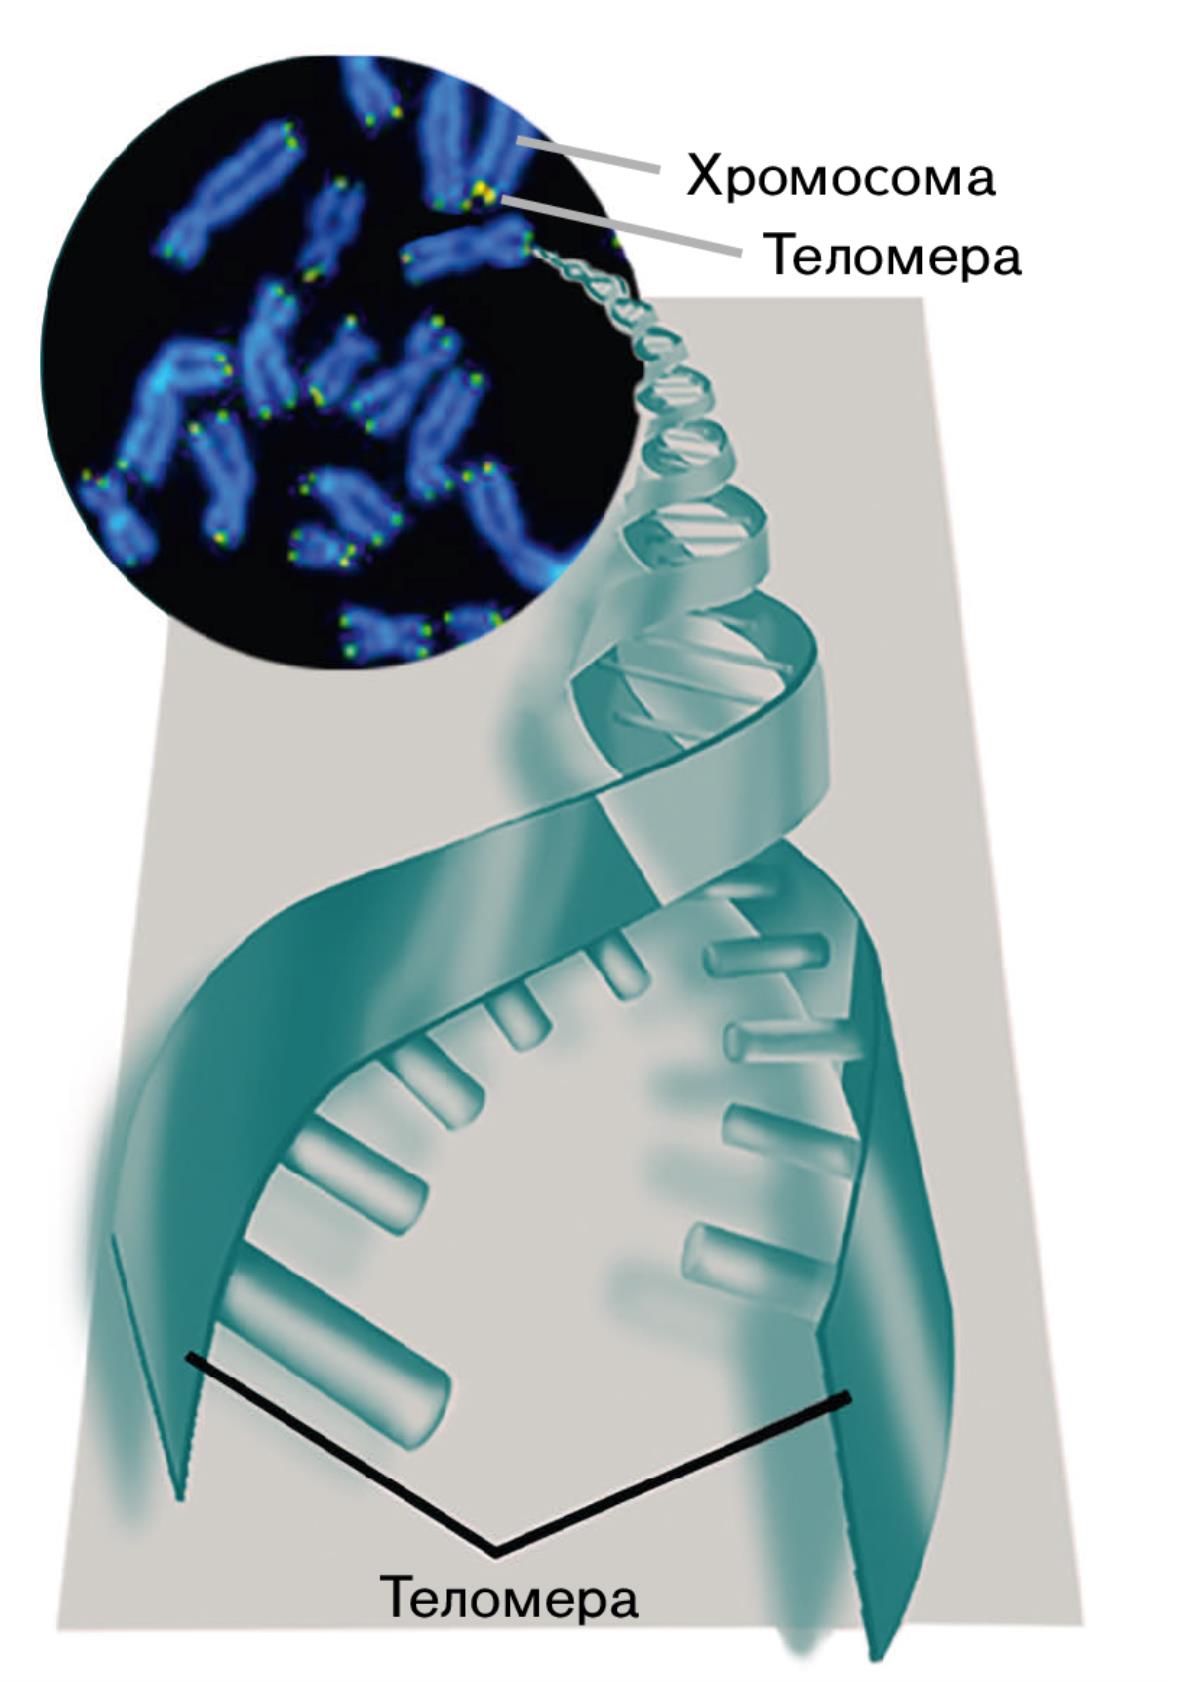 Теломеры и хромосомы